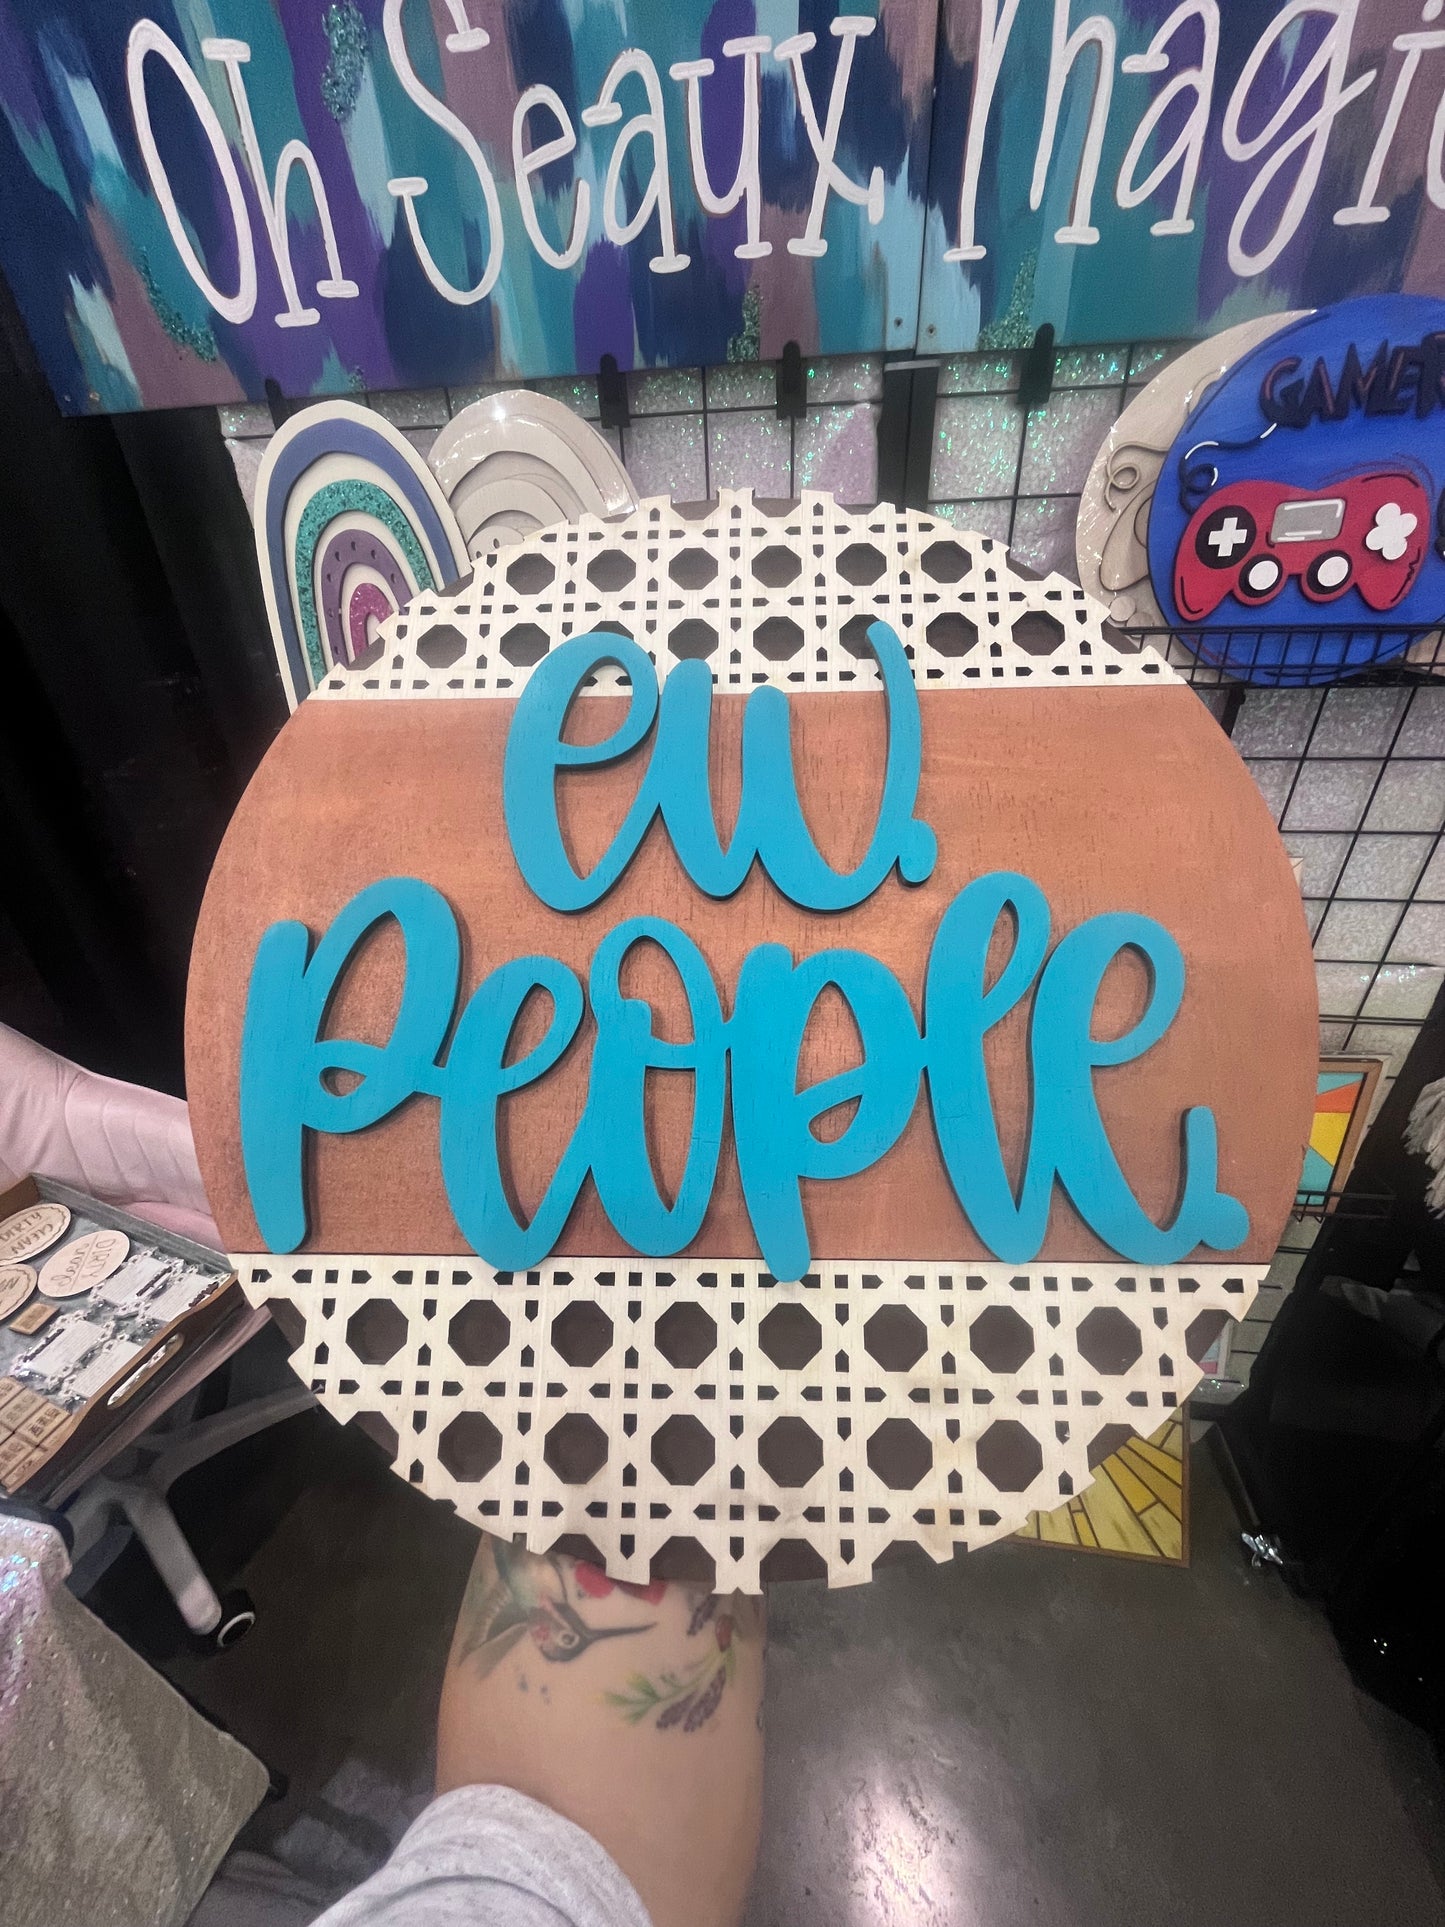 “Ew, people.” - DIY Kit